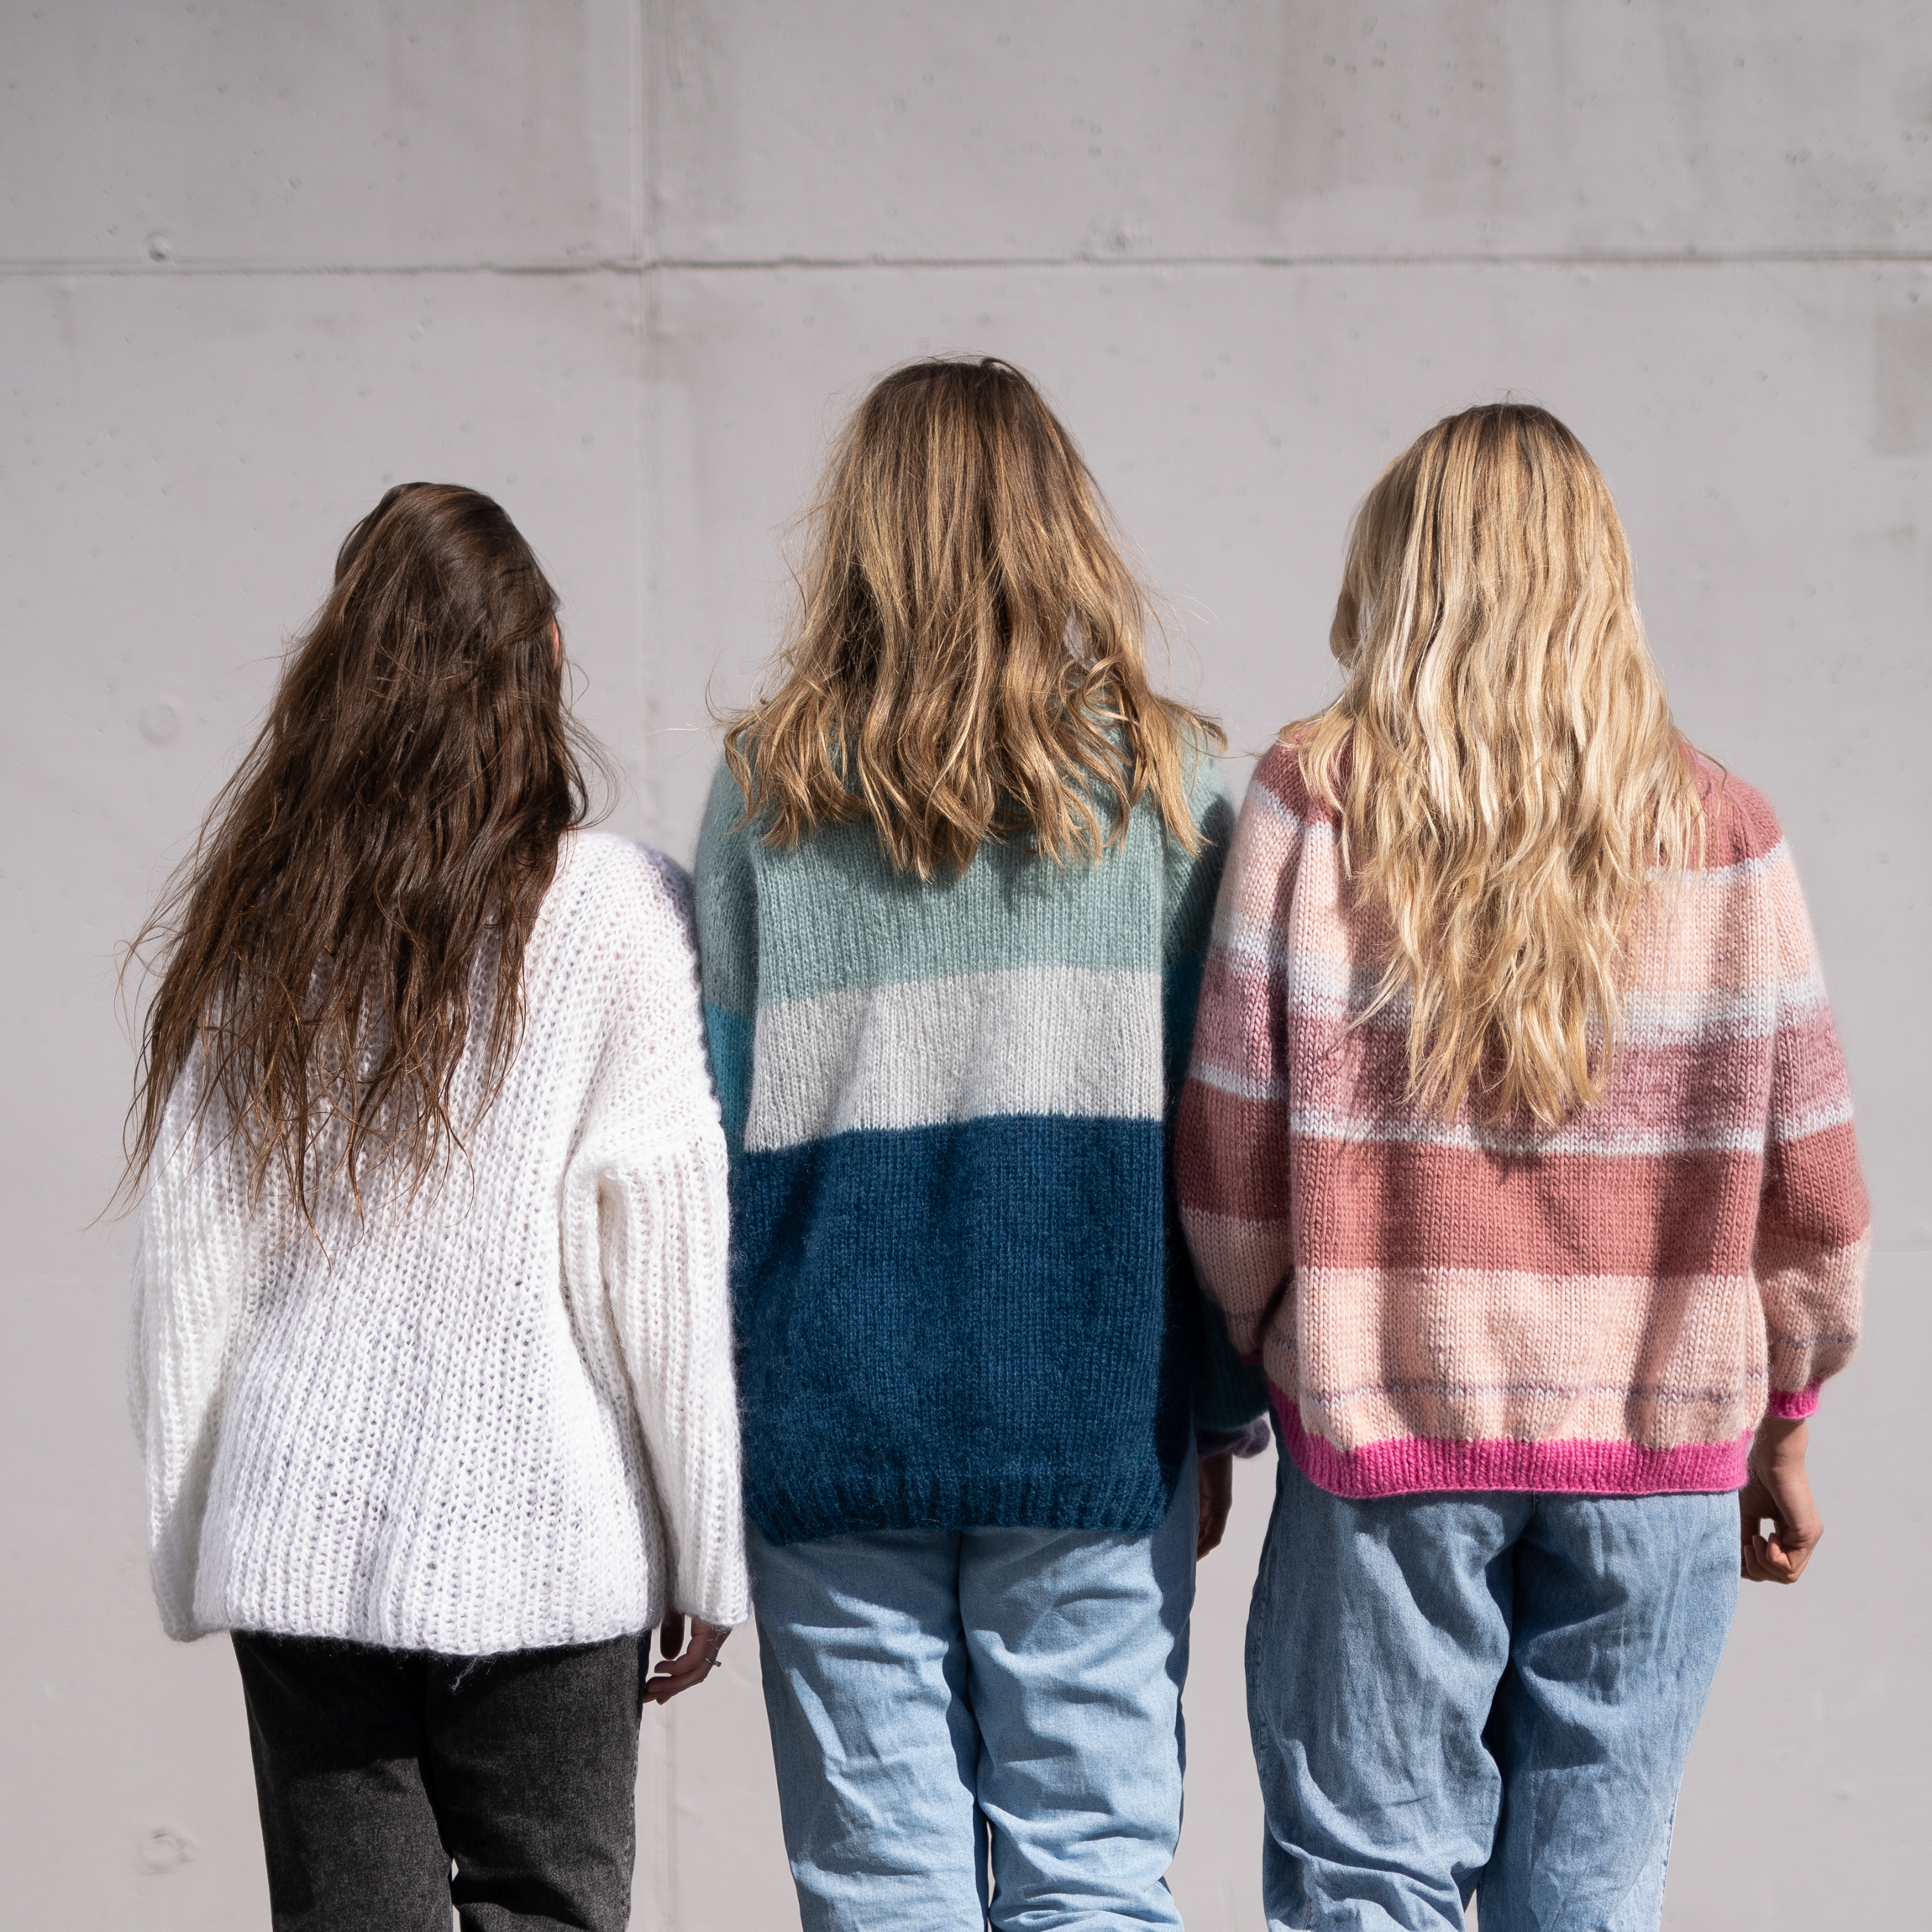  - Jubel sweater Mohair | Jubel sweater knitting kit - by HipKnitShop - 13/05/2019